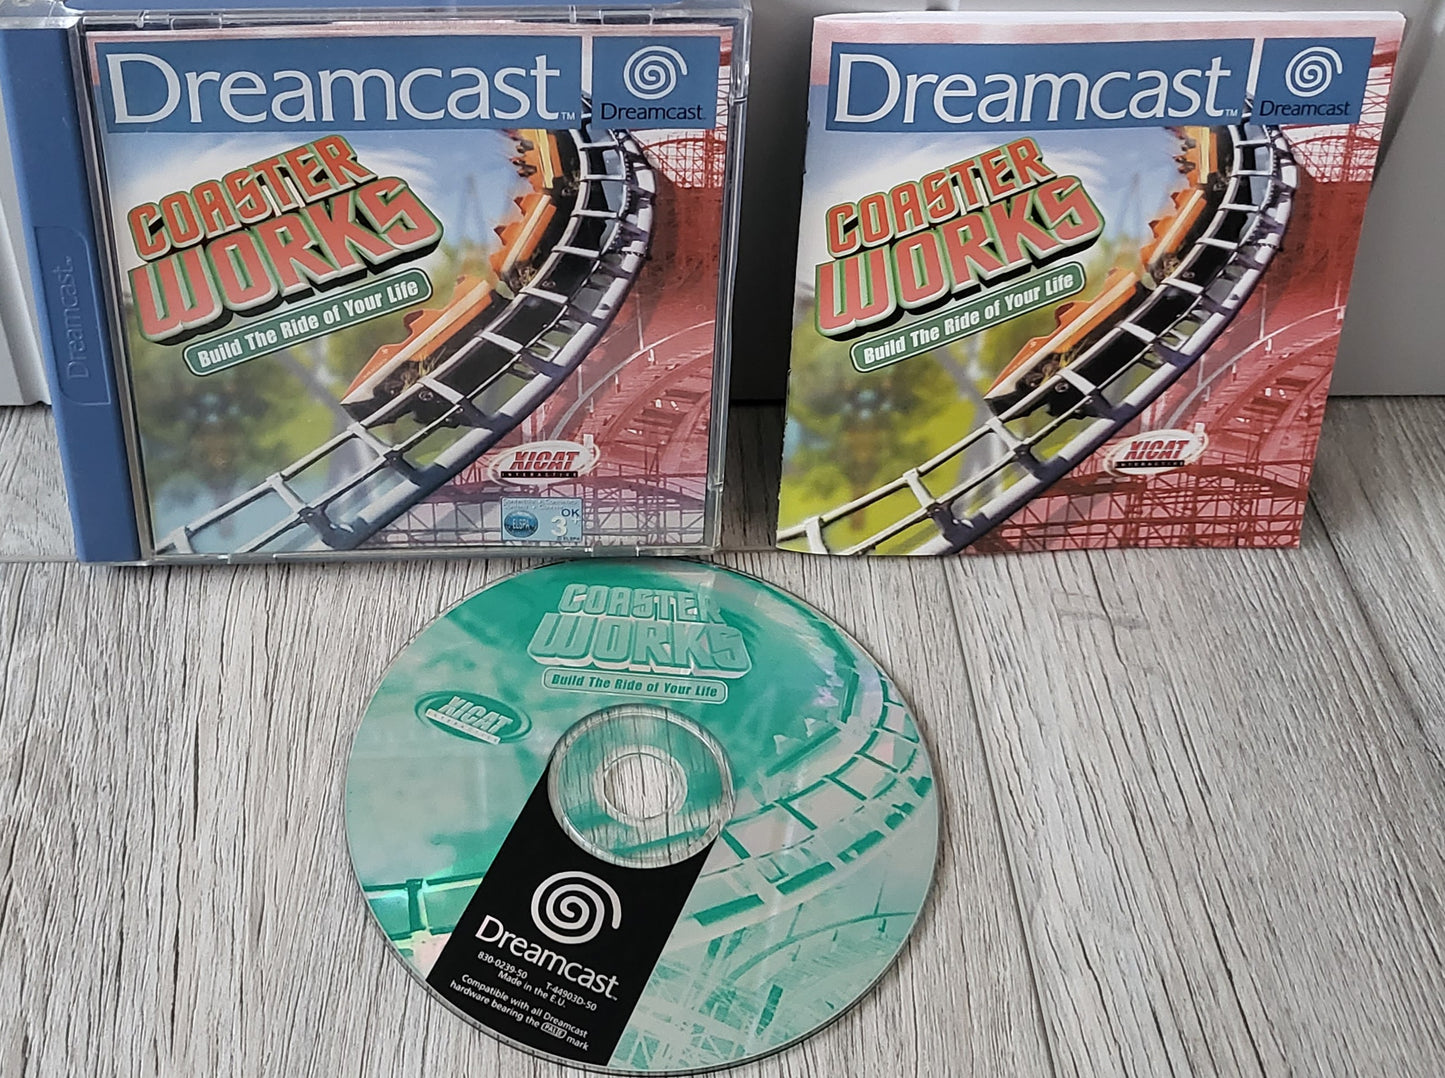 Coaster Works Sega Dreamcast